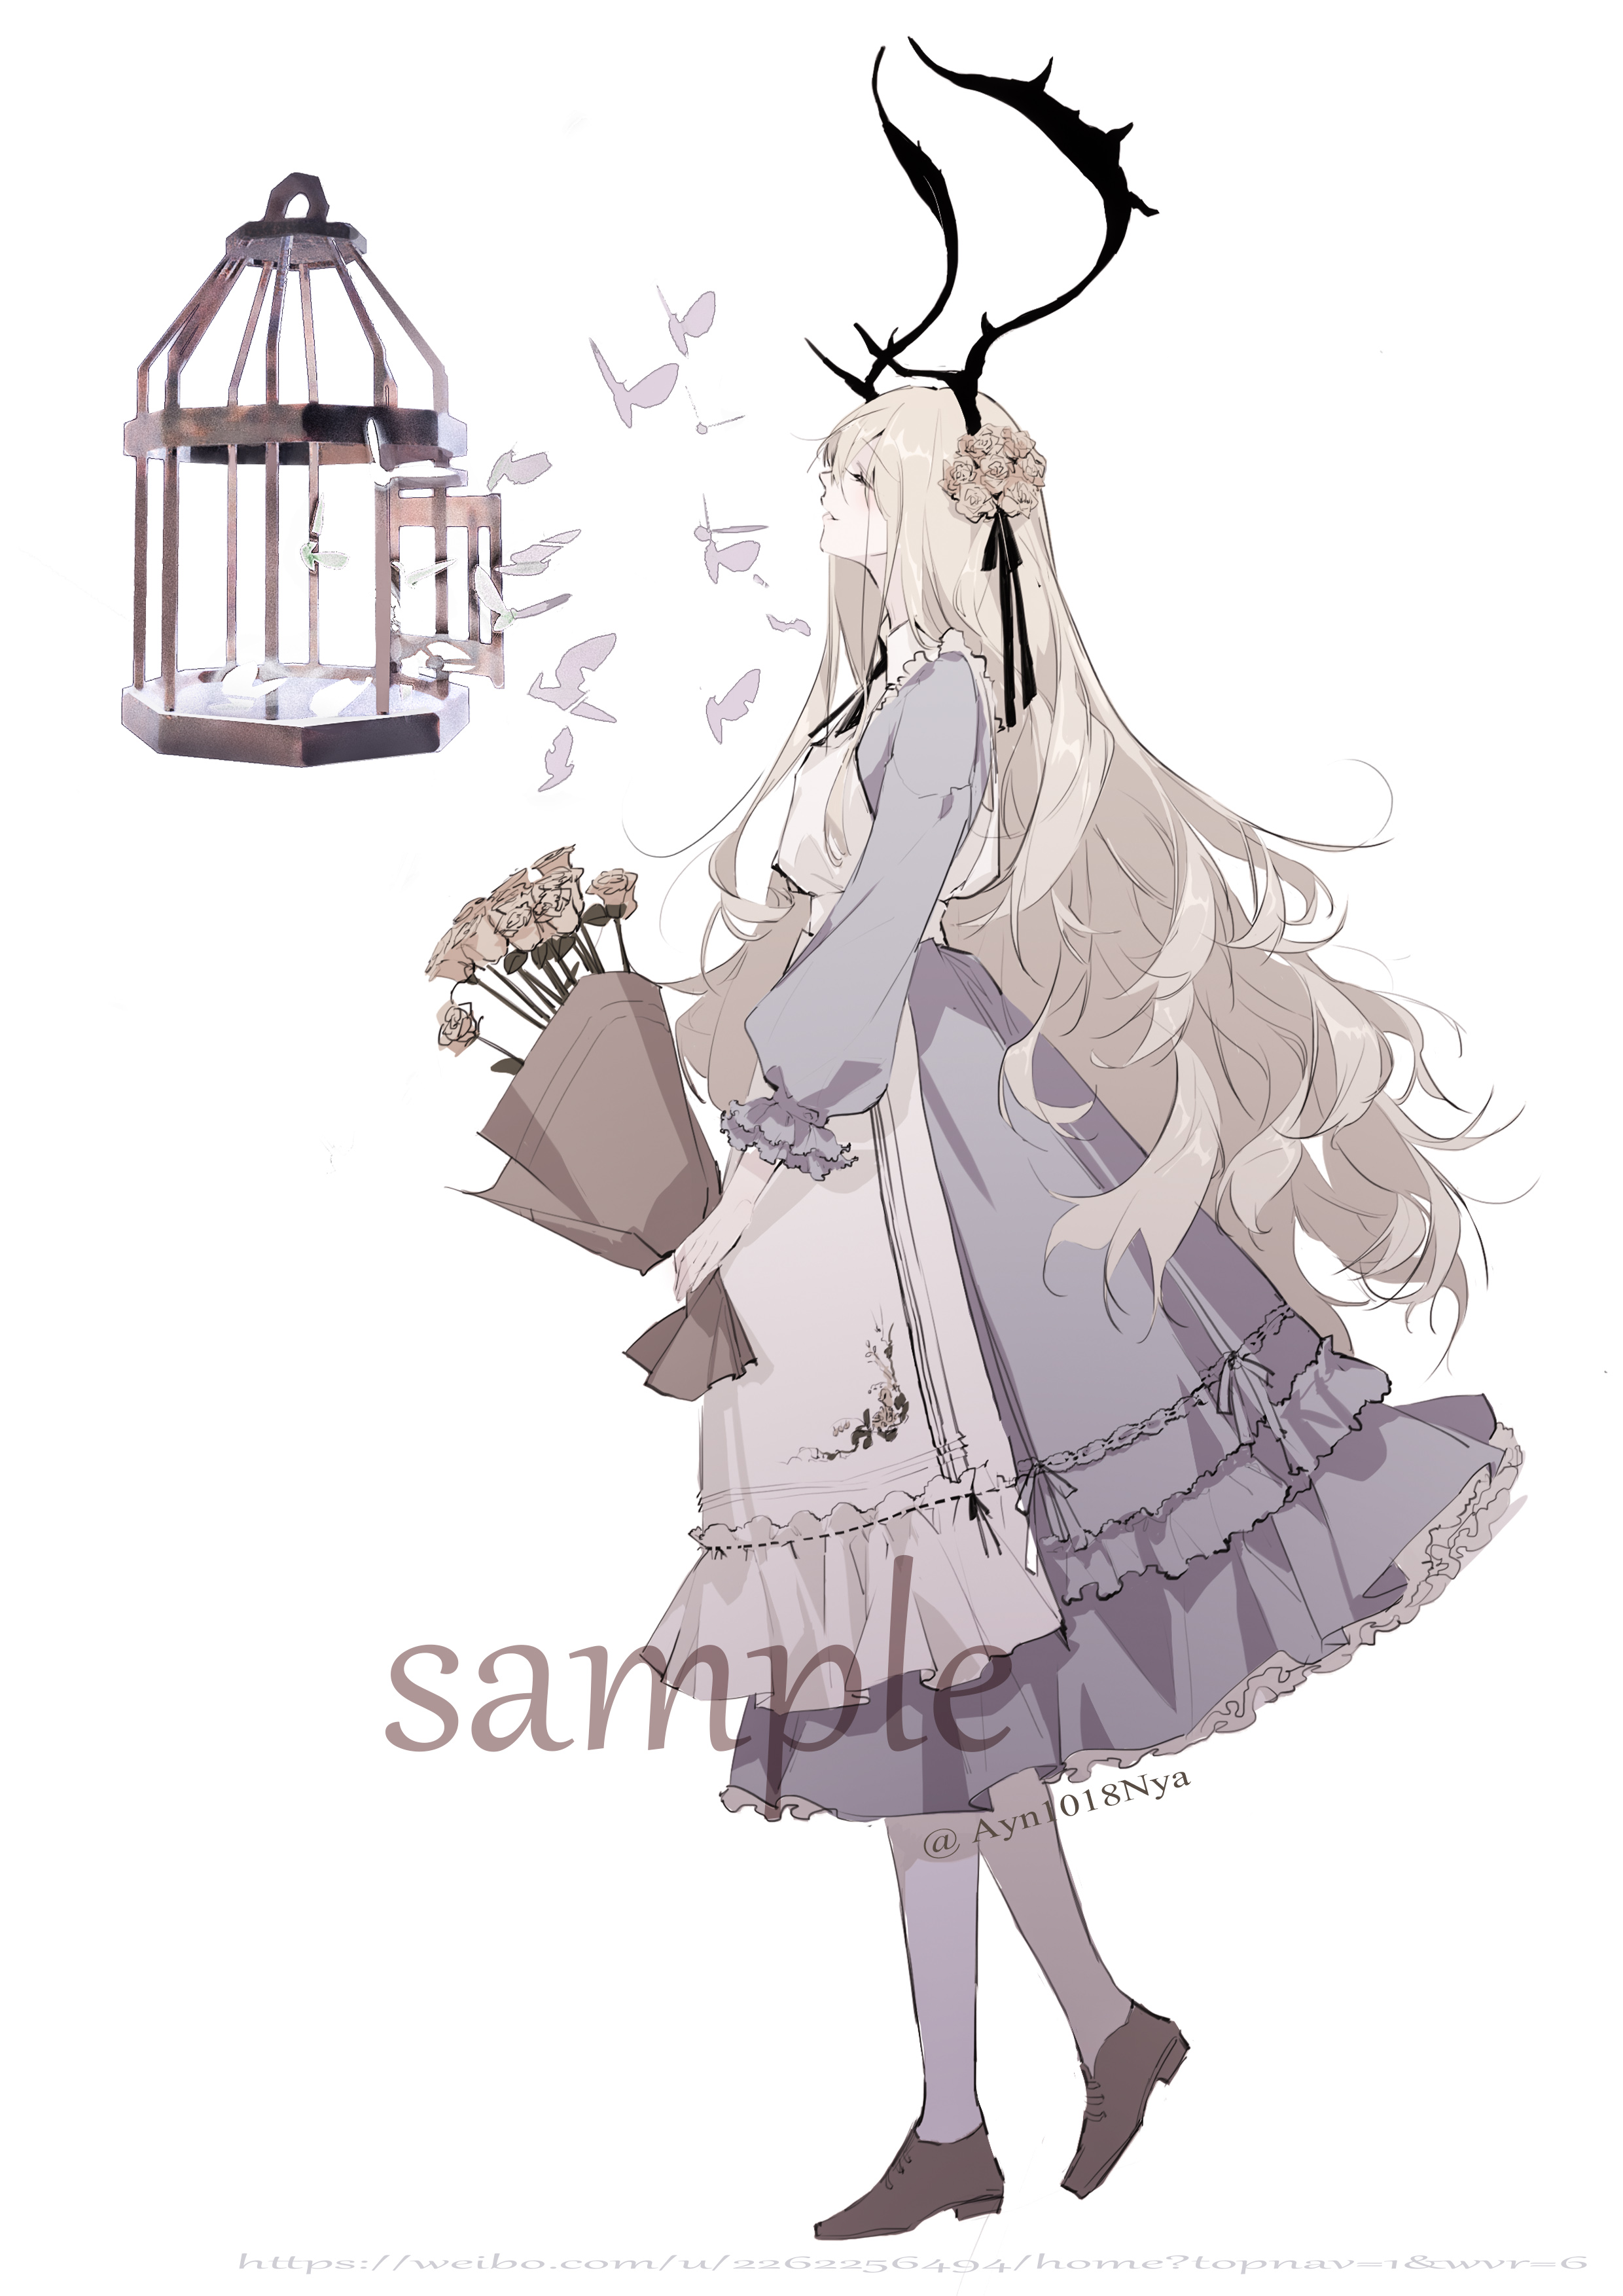 Anime Anime Girls Songruan Alice In Wonderland Long Hair Ash Blonde Dress 2480x3508